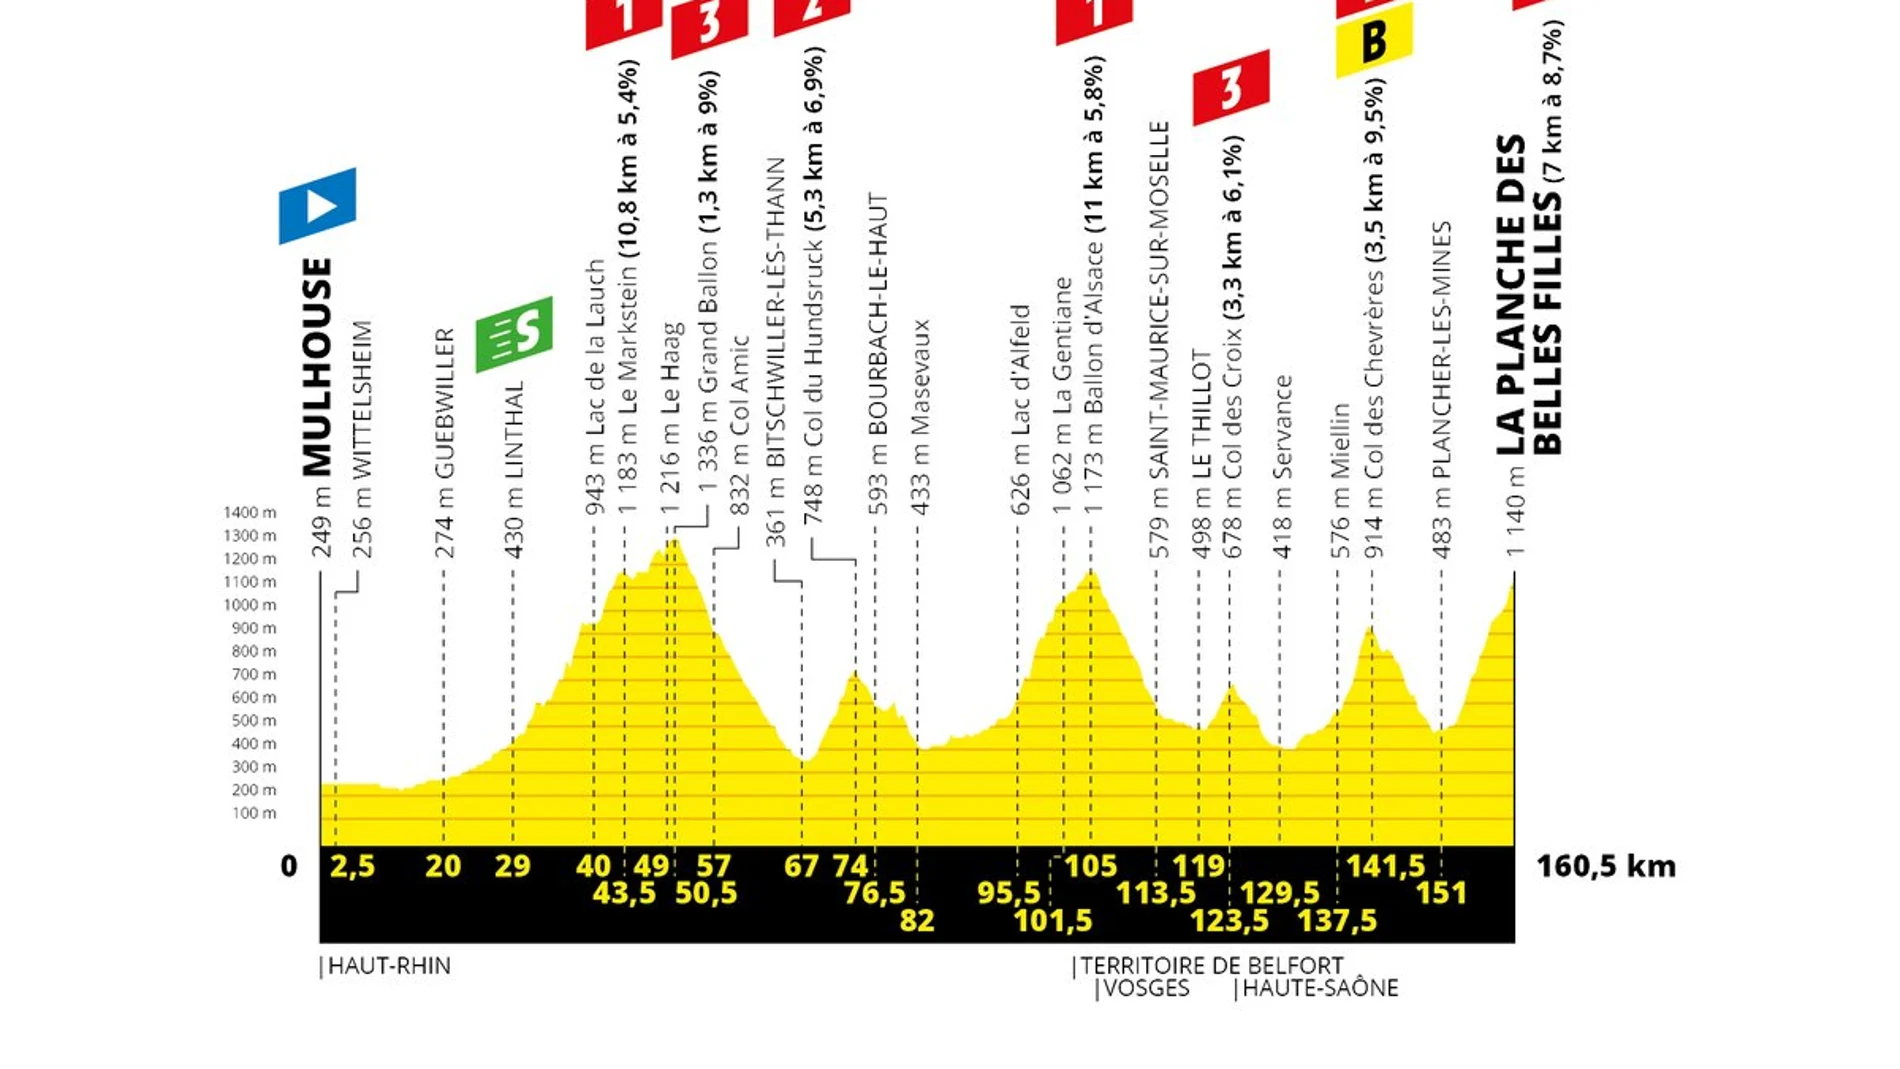 El perfil de la sexta etapa del Tour de Francia 2019